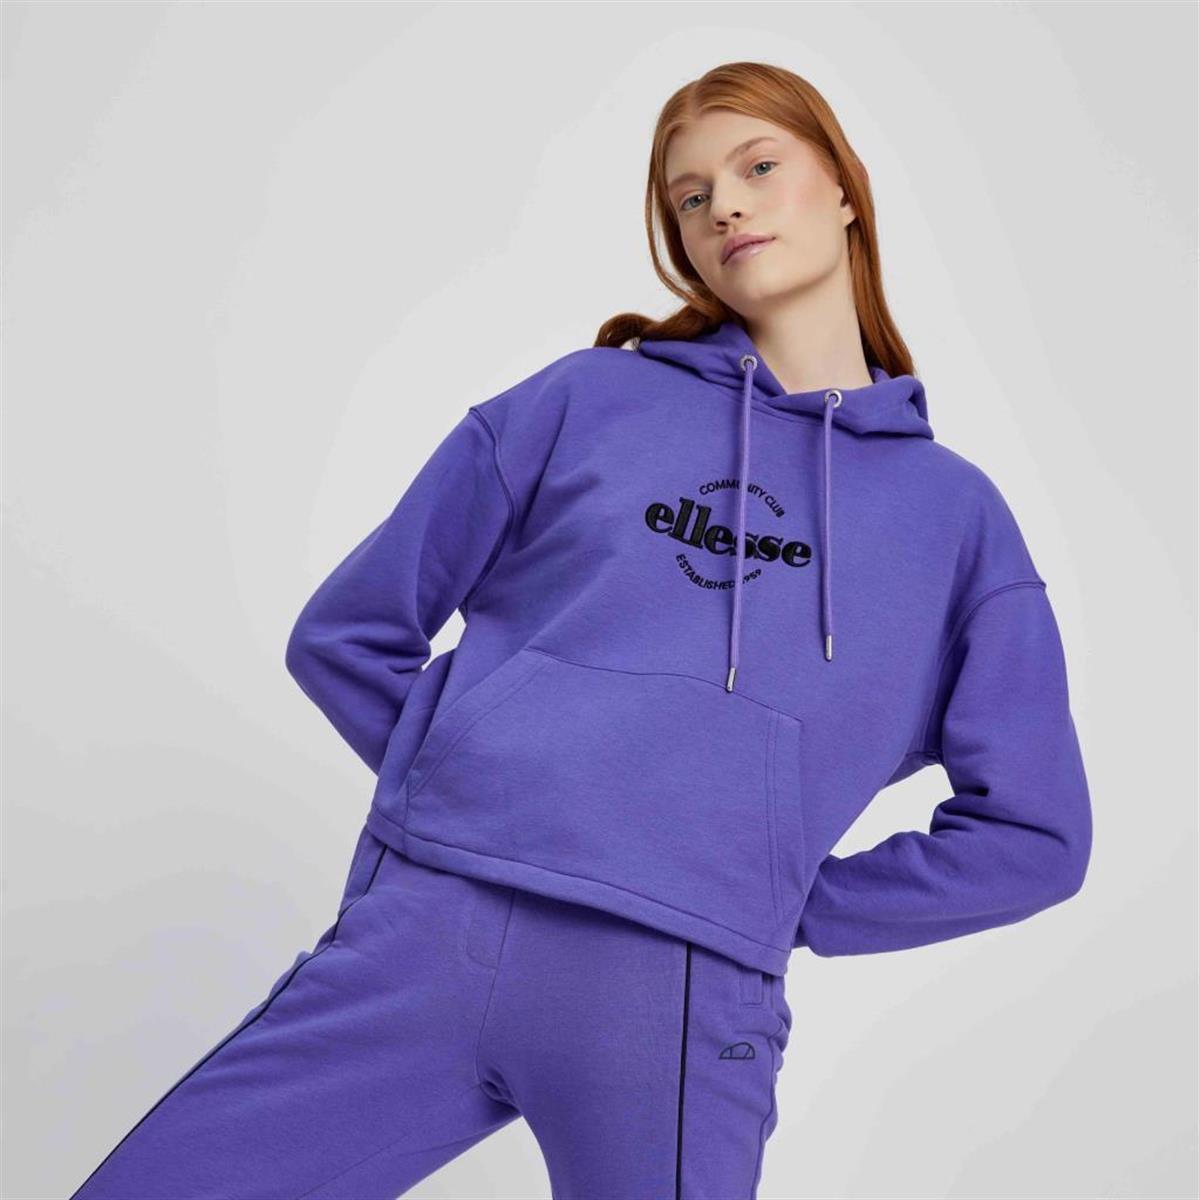 Kadın sweatshirt Modelleri ve Fiyatları | Bee.com.tr